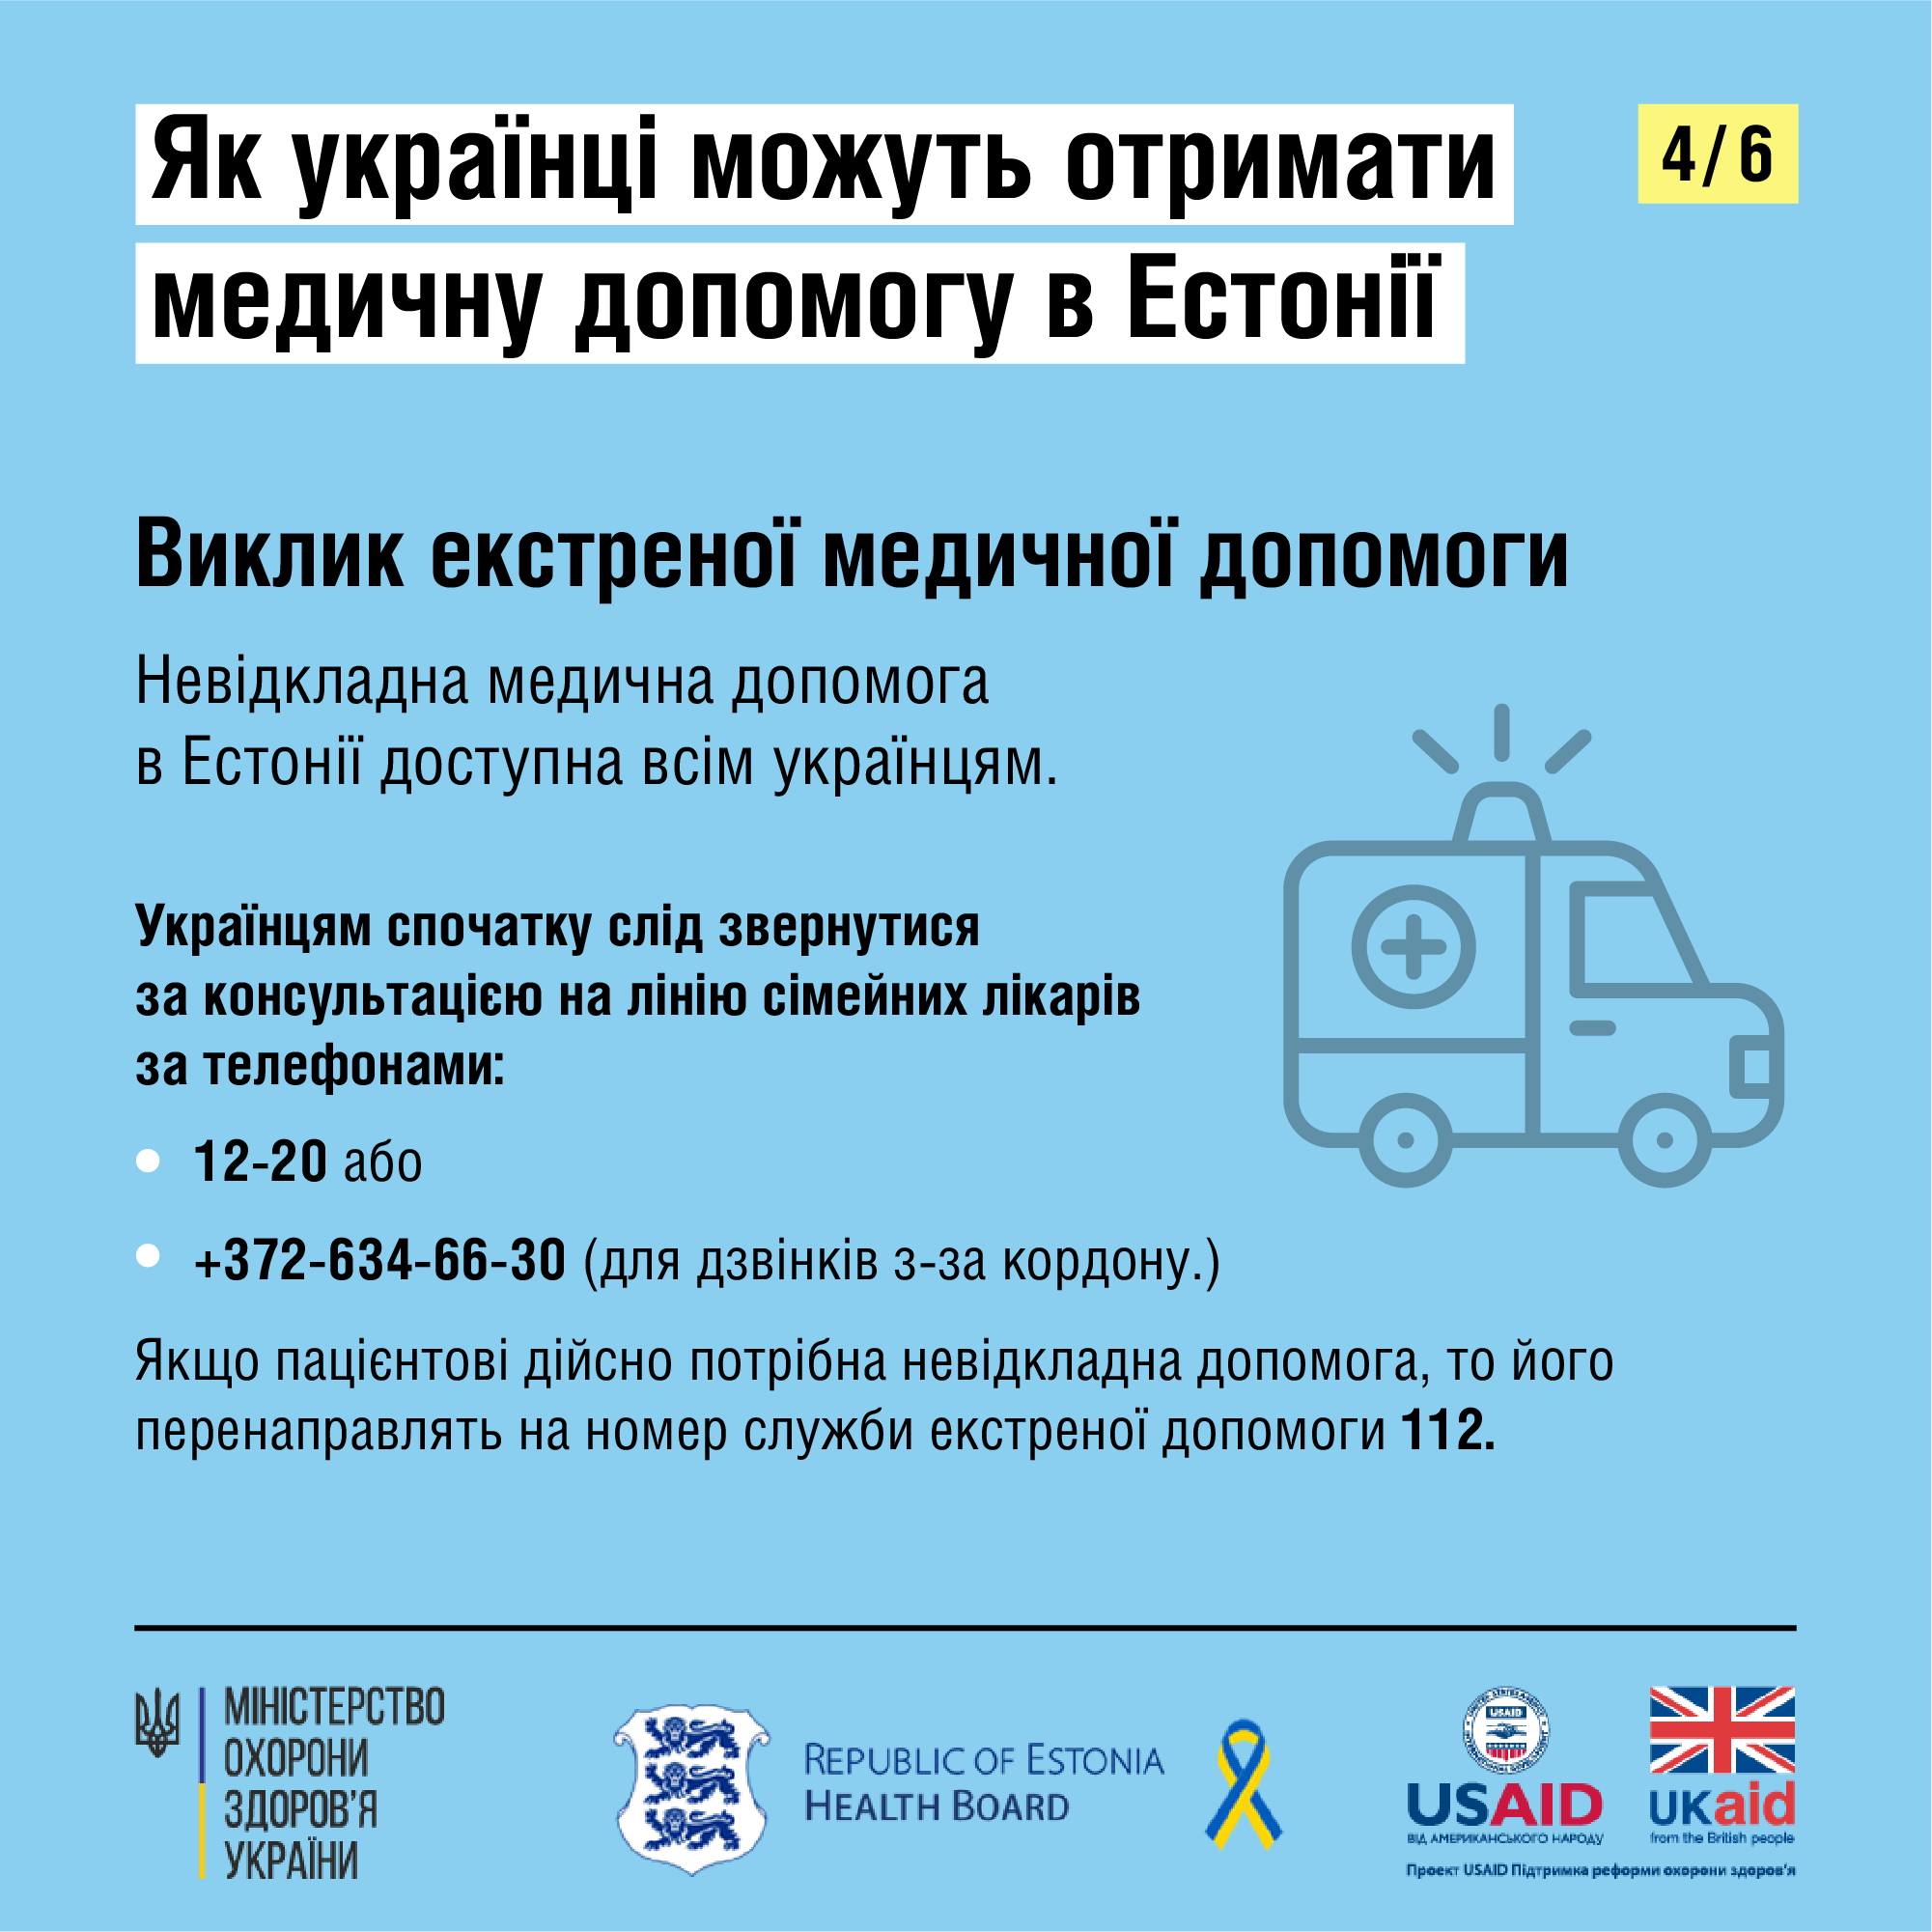 Как украинцам получить медицинскую помощь в Эстонии — фото 4